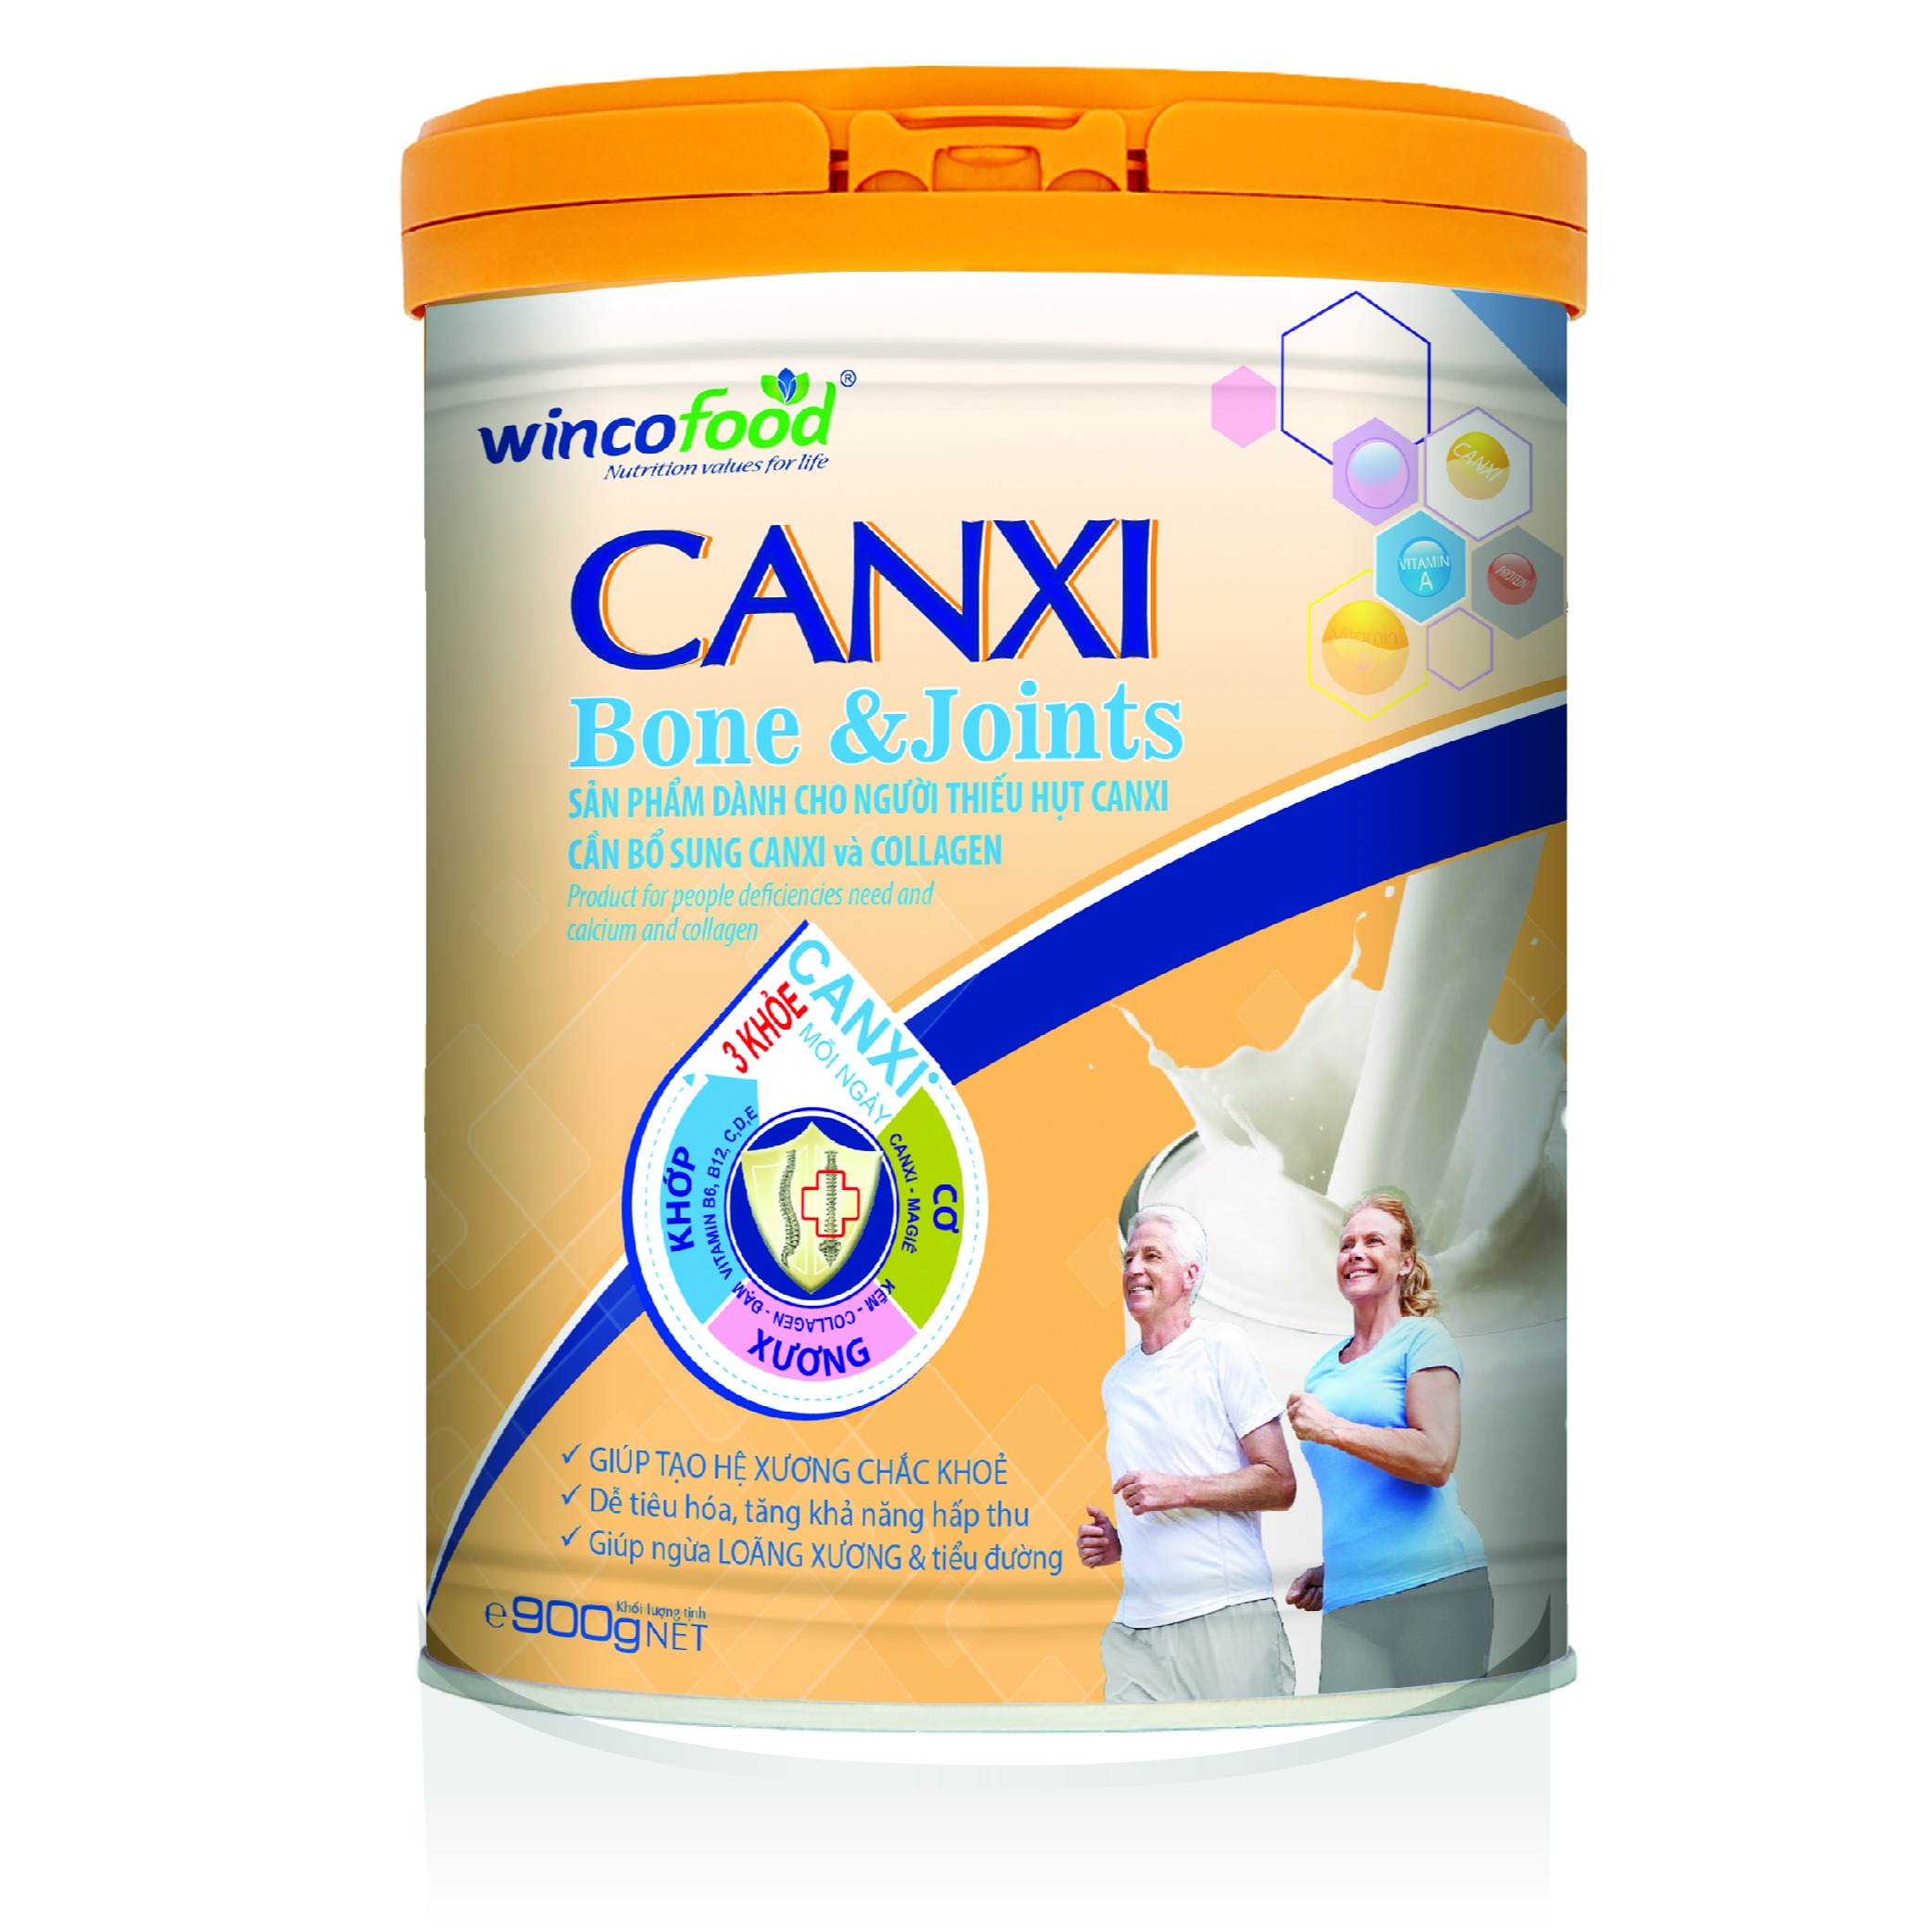 SỮA BỘT WINCOFOOD CANXI BONE&JOINTS LON 900G: Bổ sung Canxi và Collagen tốt cho cơ xương khớp (Date mới 2023)